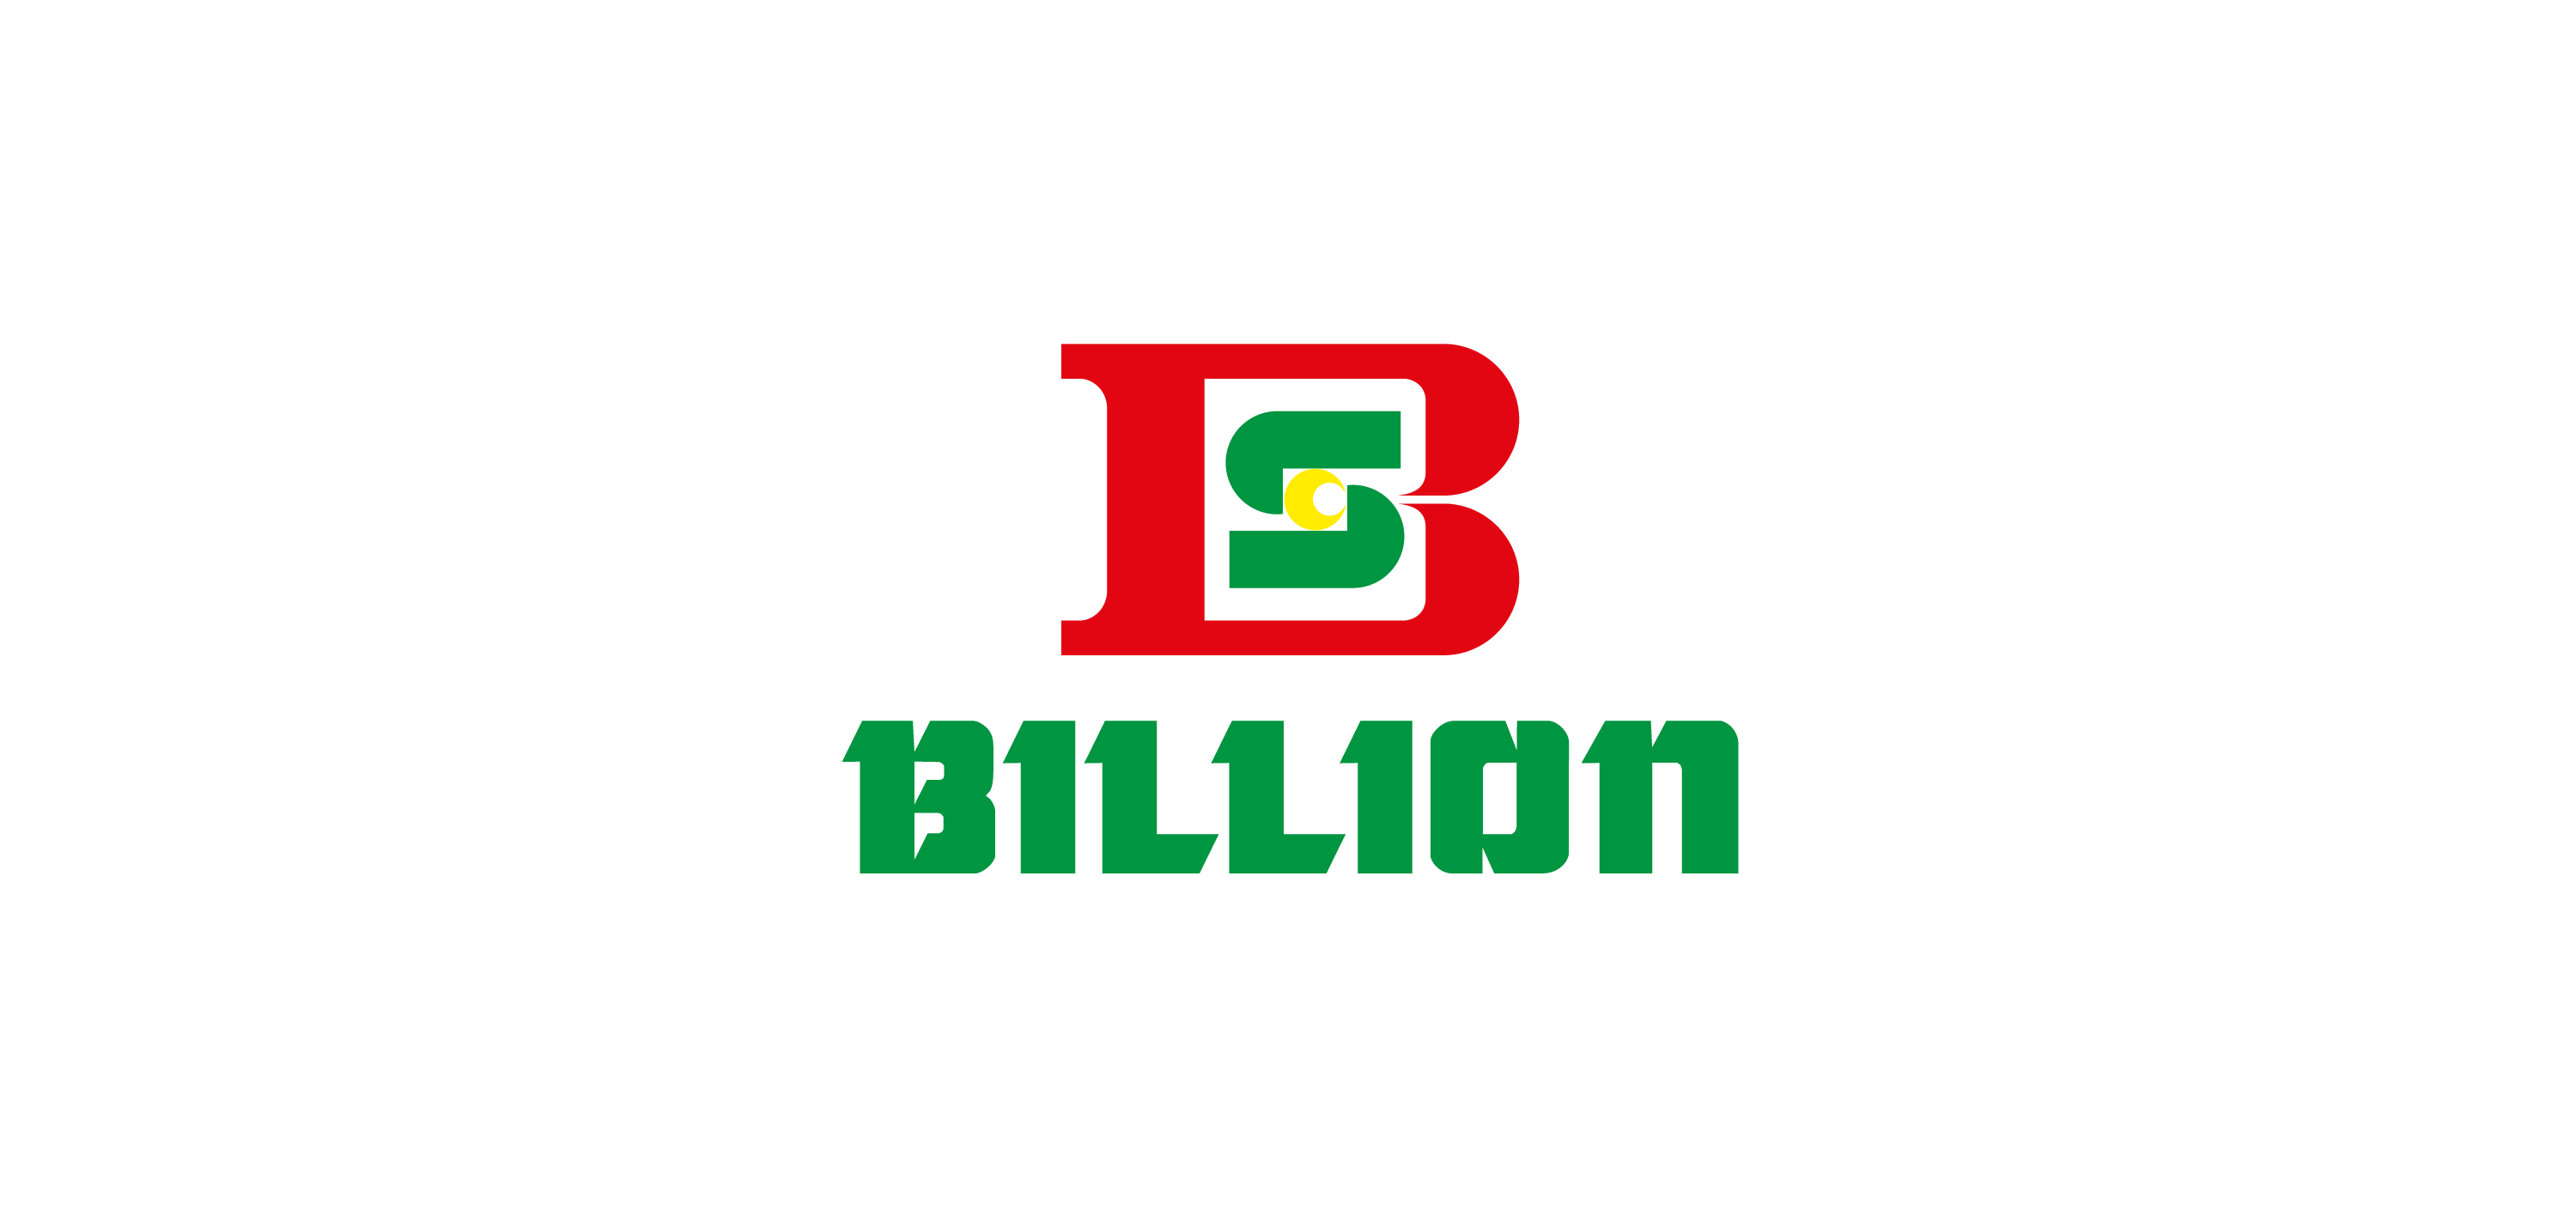 Billion Supermarket logo vector